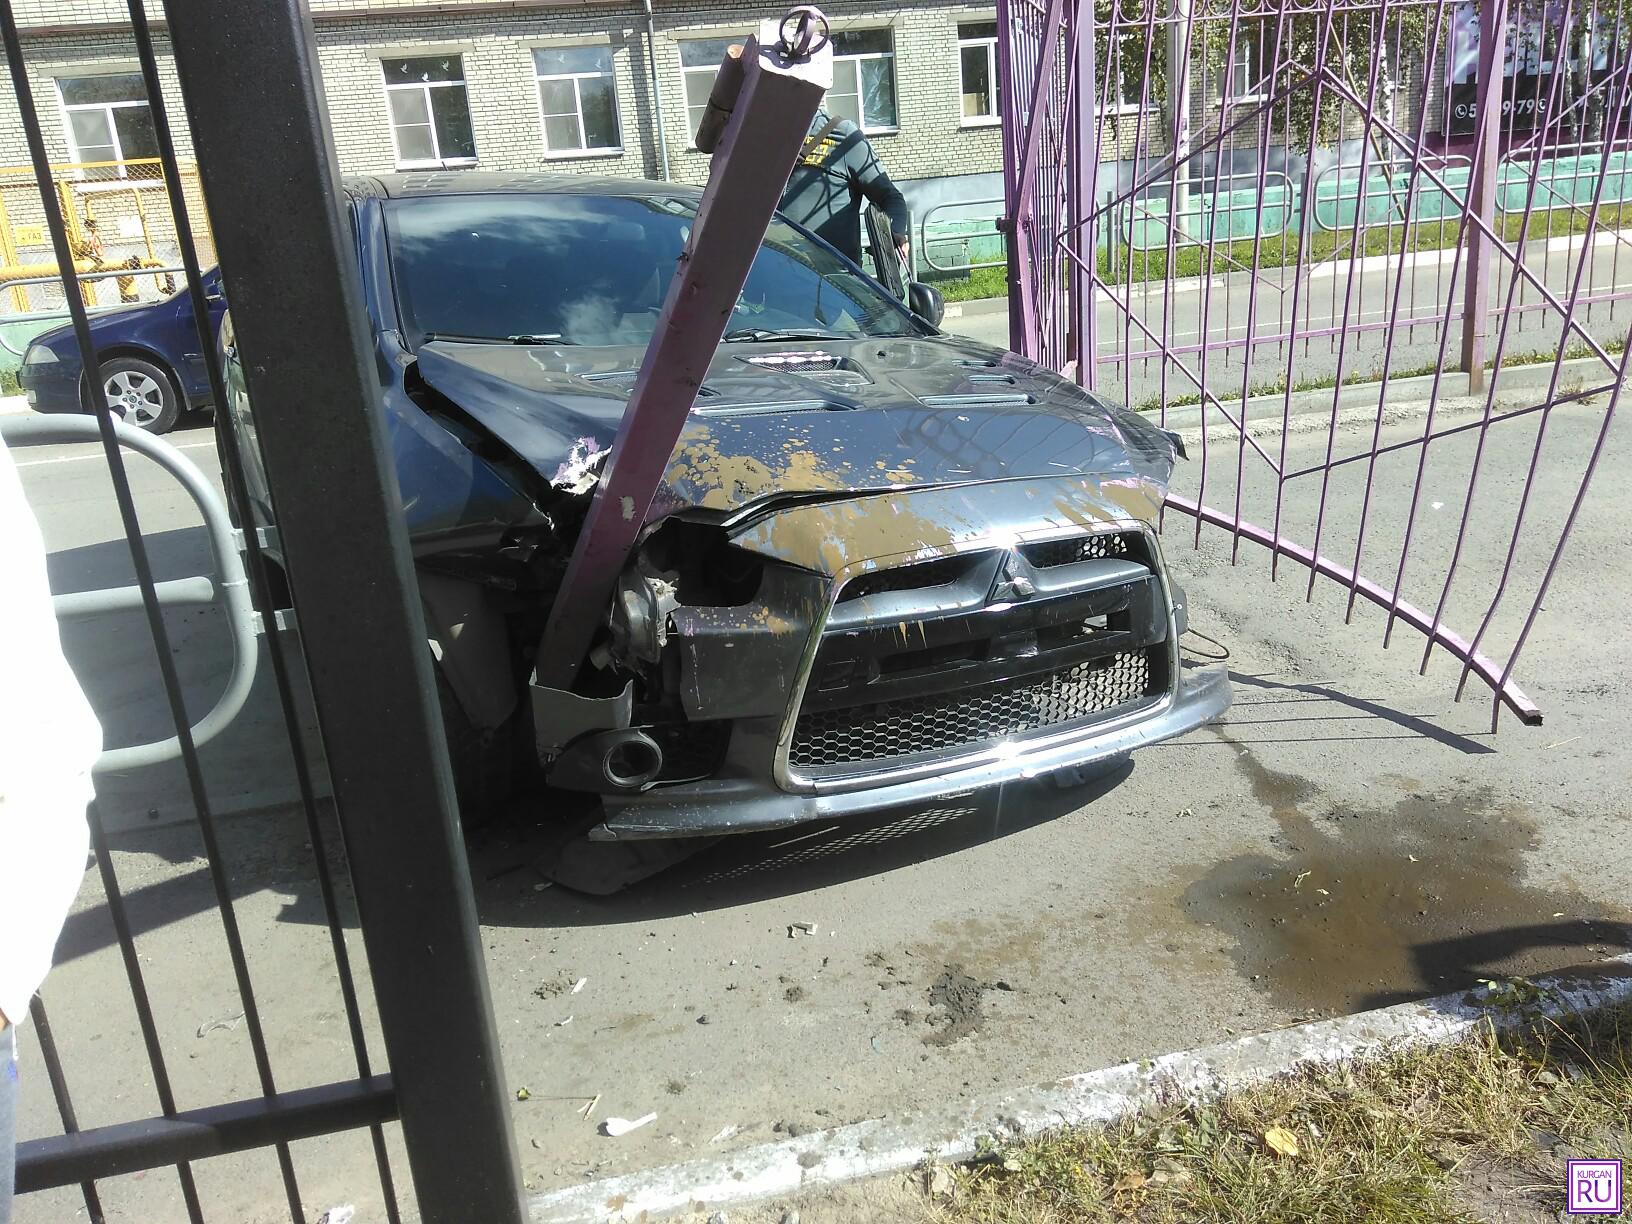 Фото из группы «Инцидент/Курган» соцсети «ВКонтакте»